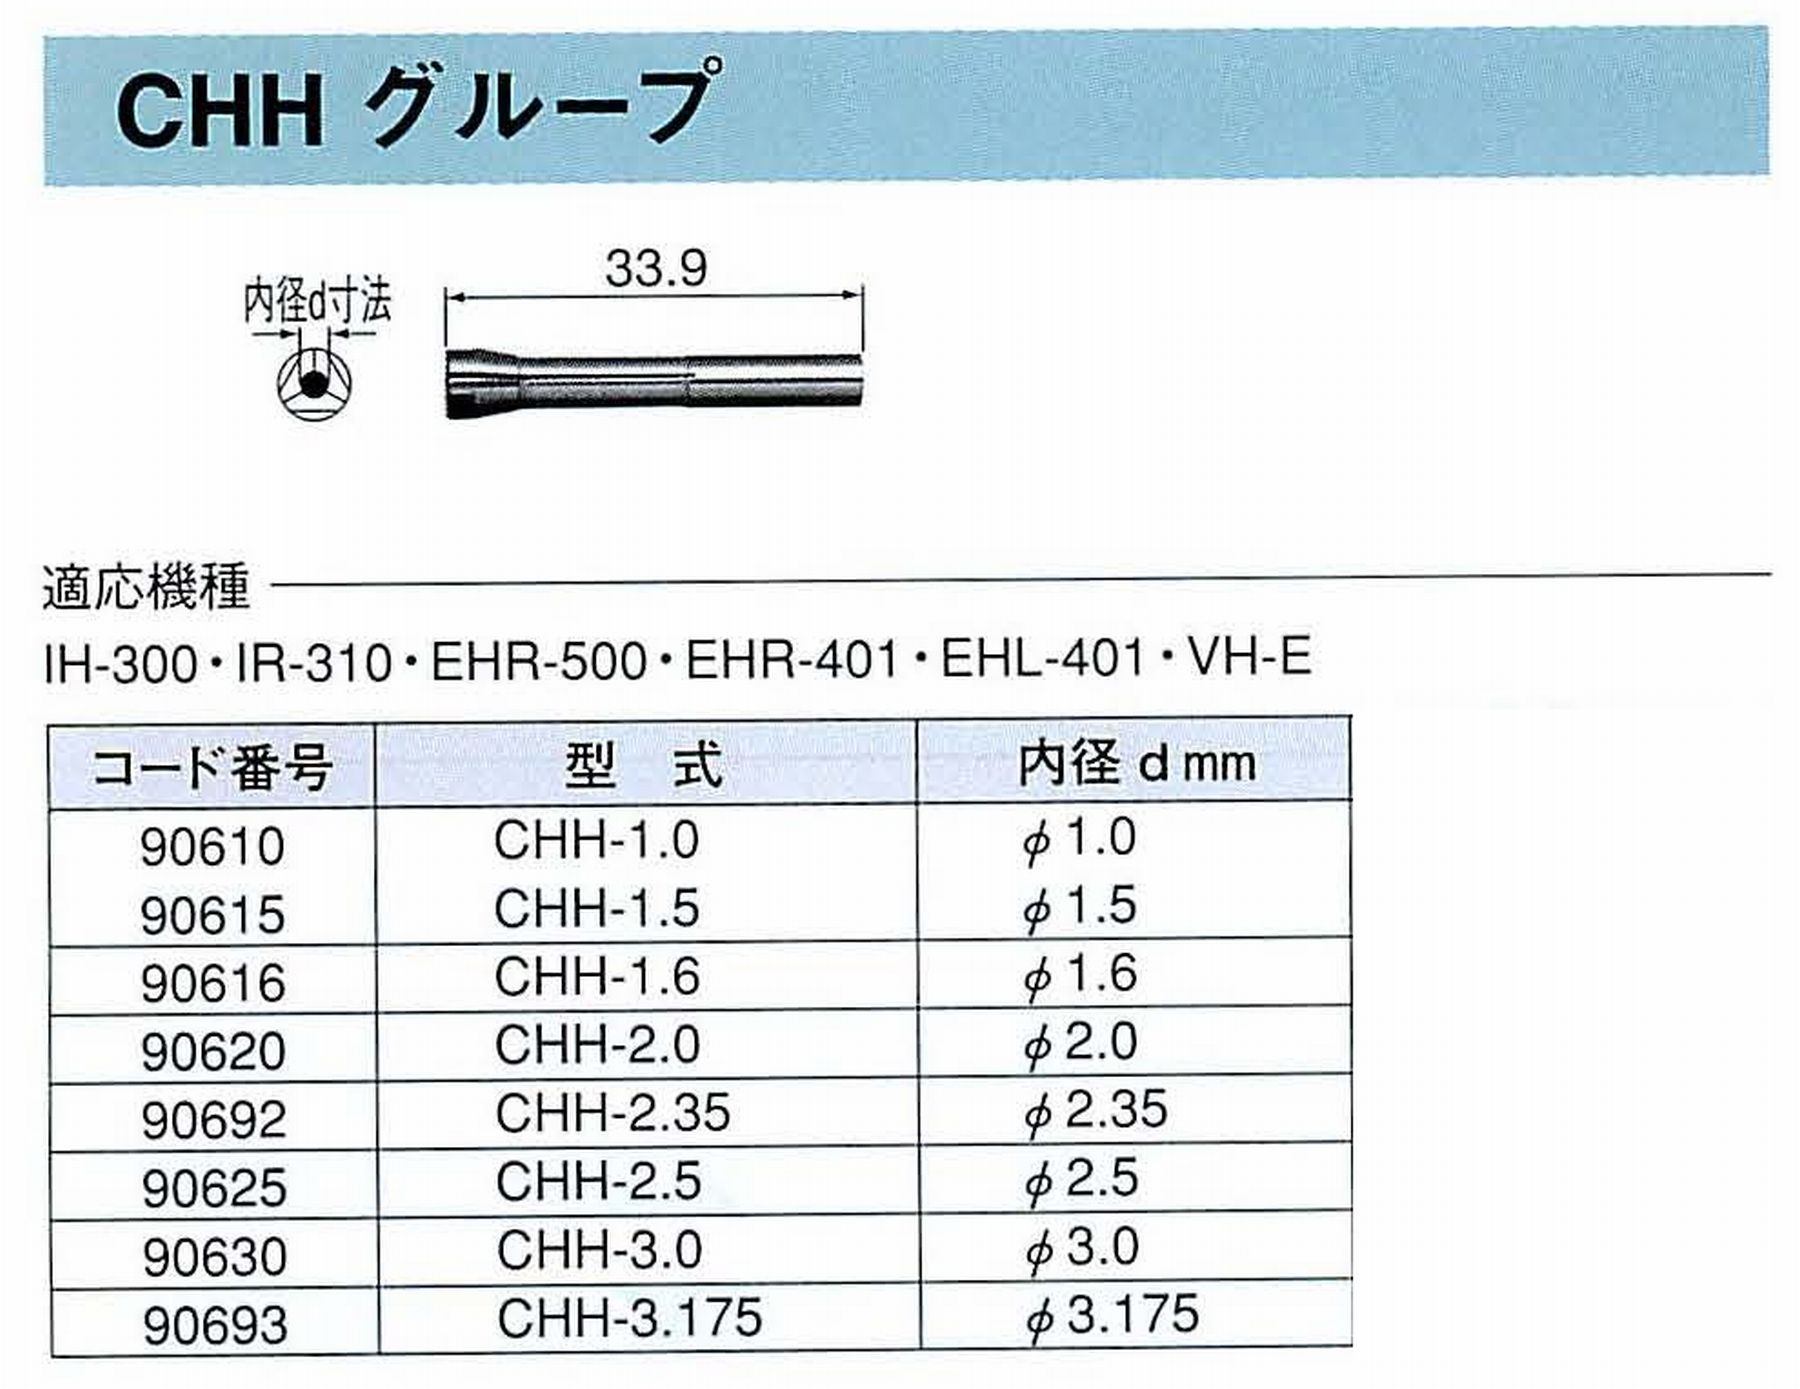 ナカニシ/NAKANISHI コレットチャック コード番号 90610 型式 CHH-1.0 内径:Φ1.0